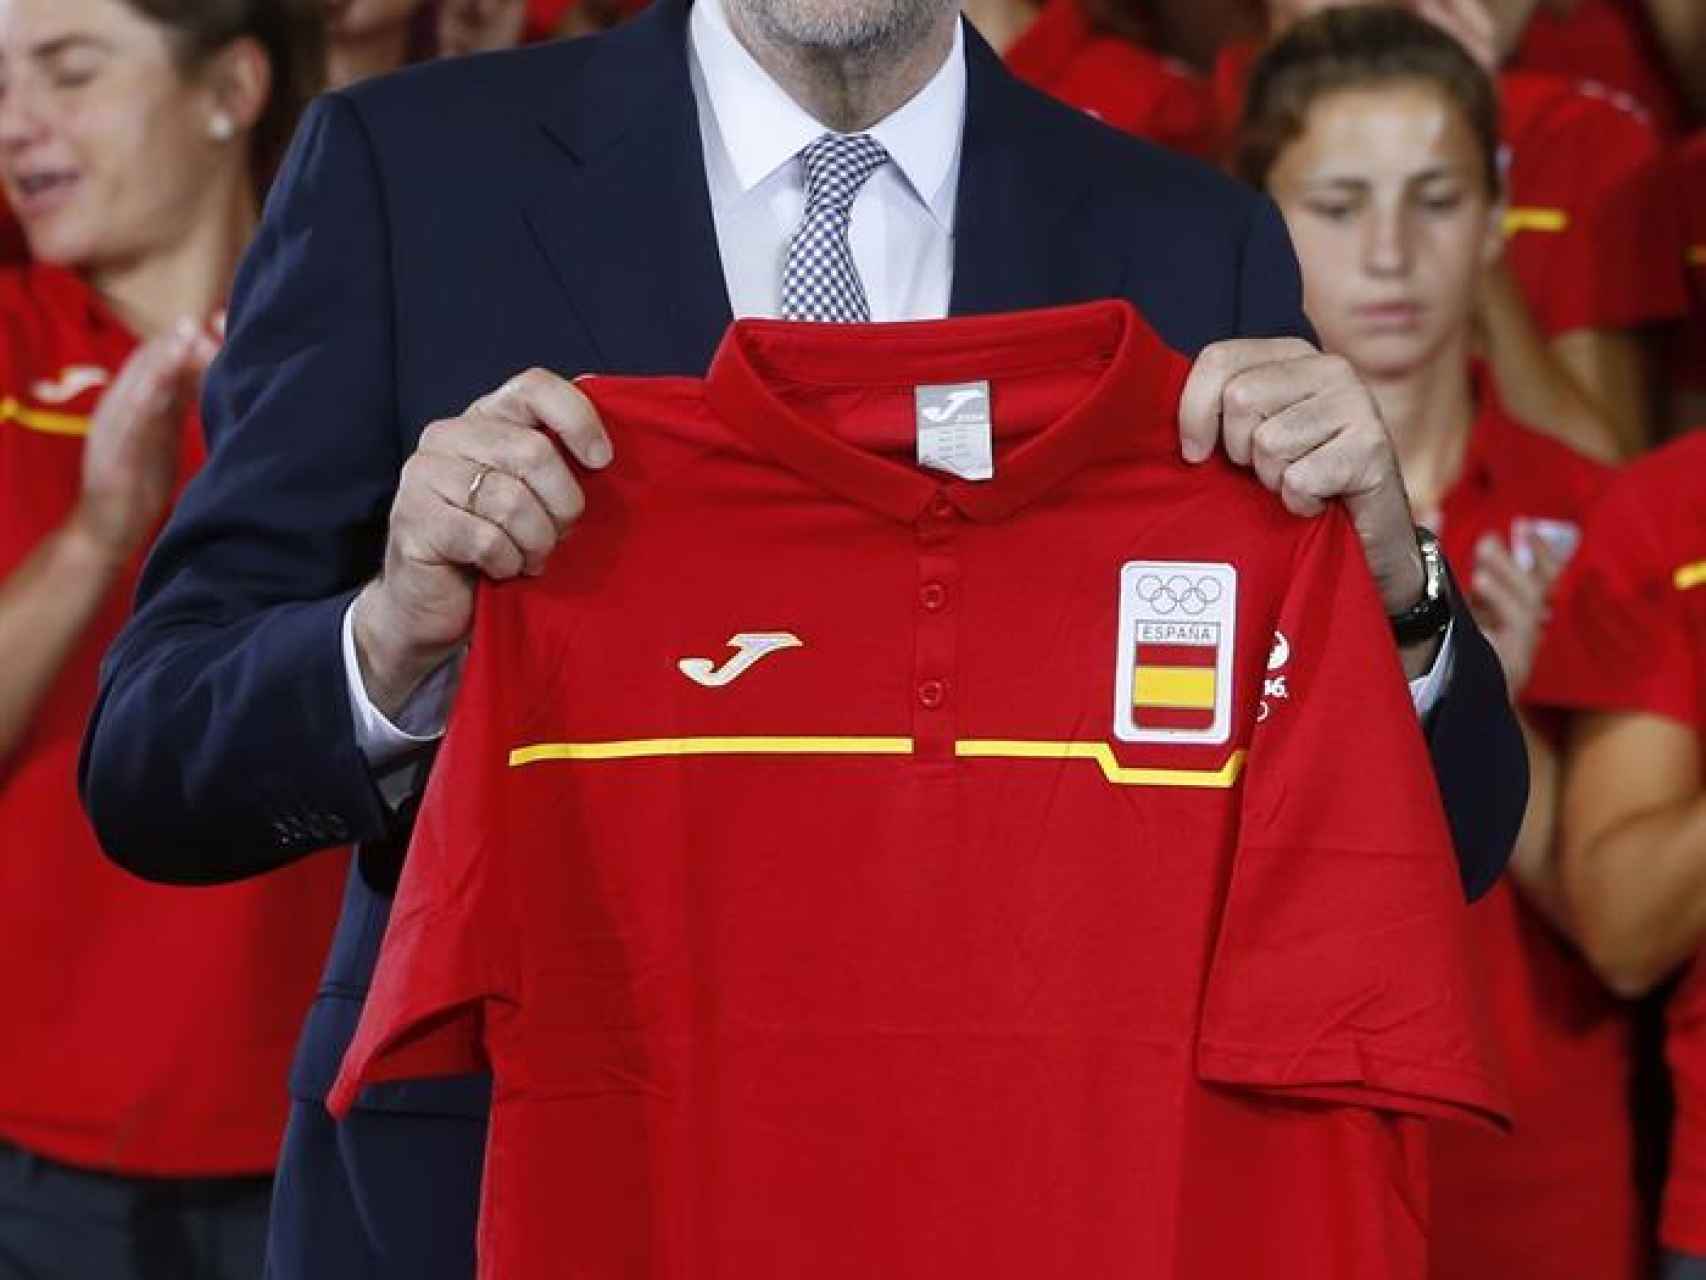 Mariano Rajoy posa con la camiseta del equipo olímpico de España, que, atendiendo a su aplastante lógica, lucirán los deportistas españoles.